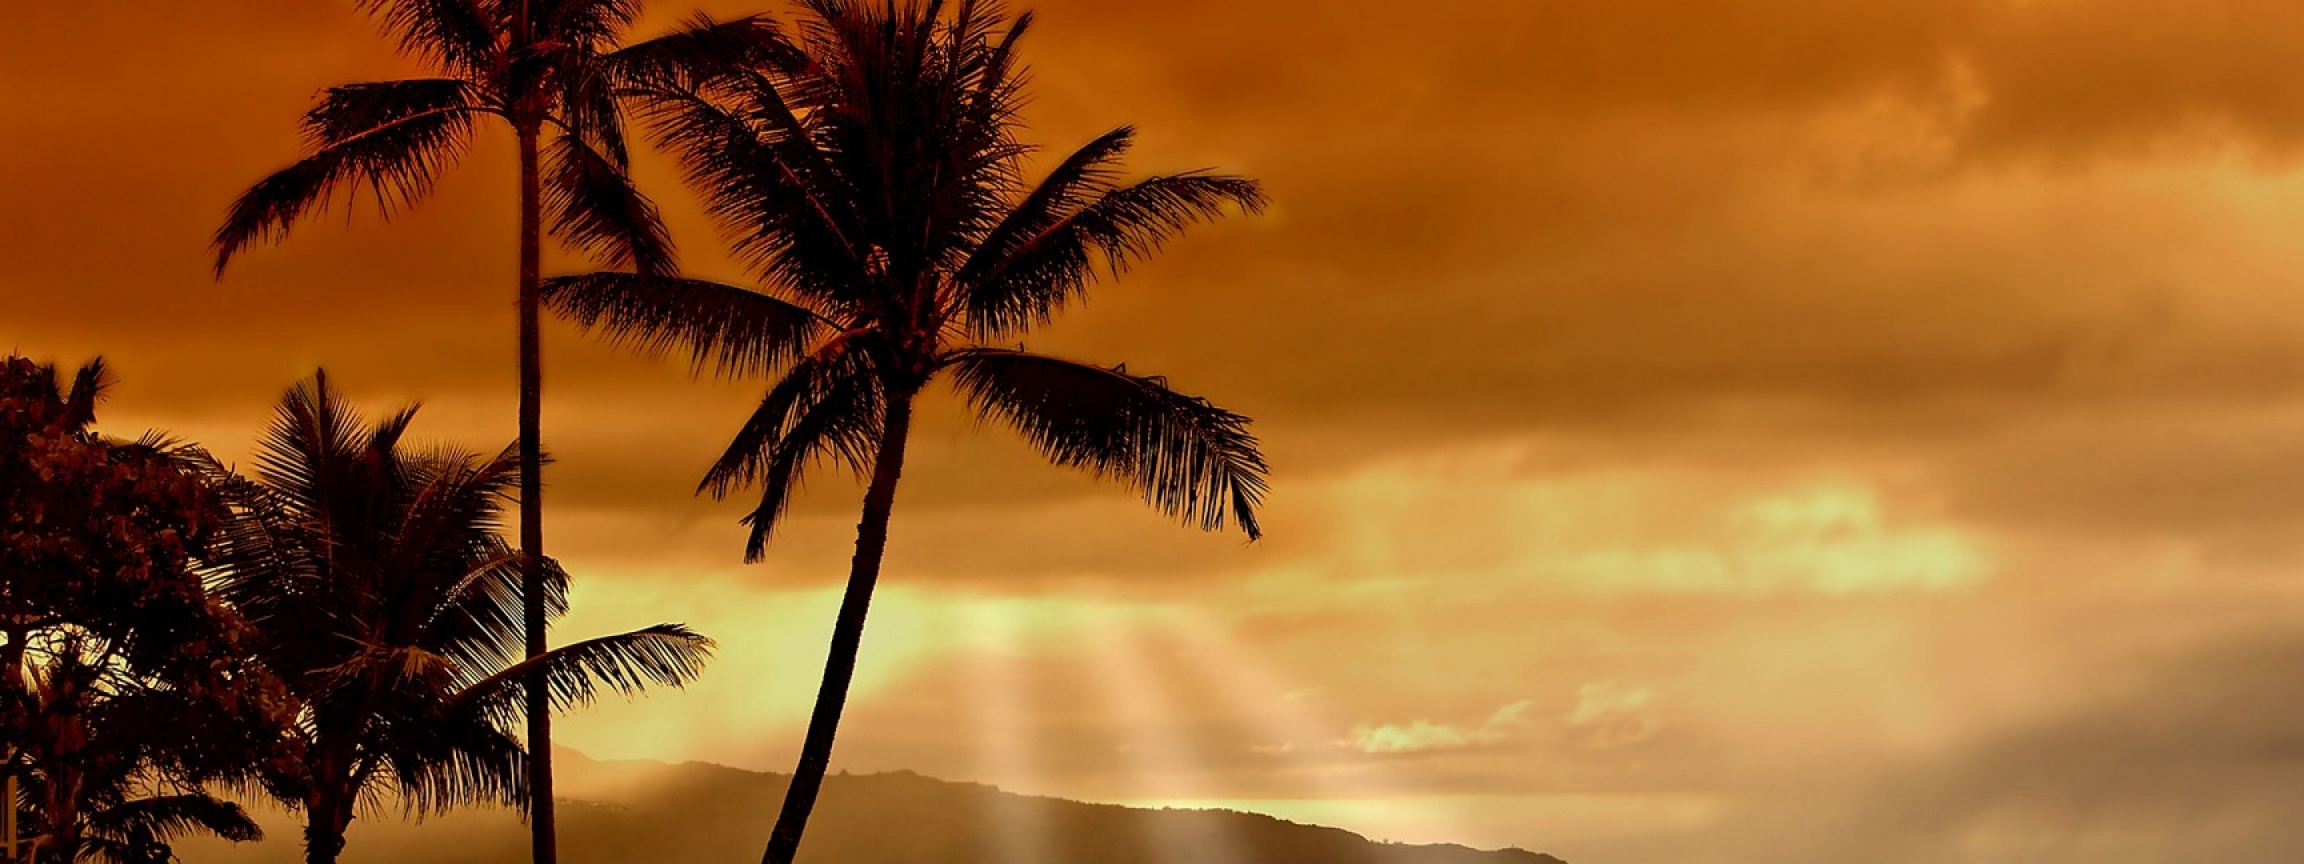 Hawaiian Sunset And Palm Trees